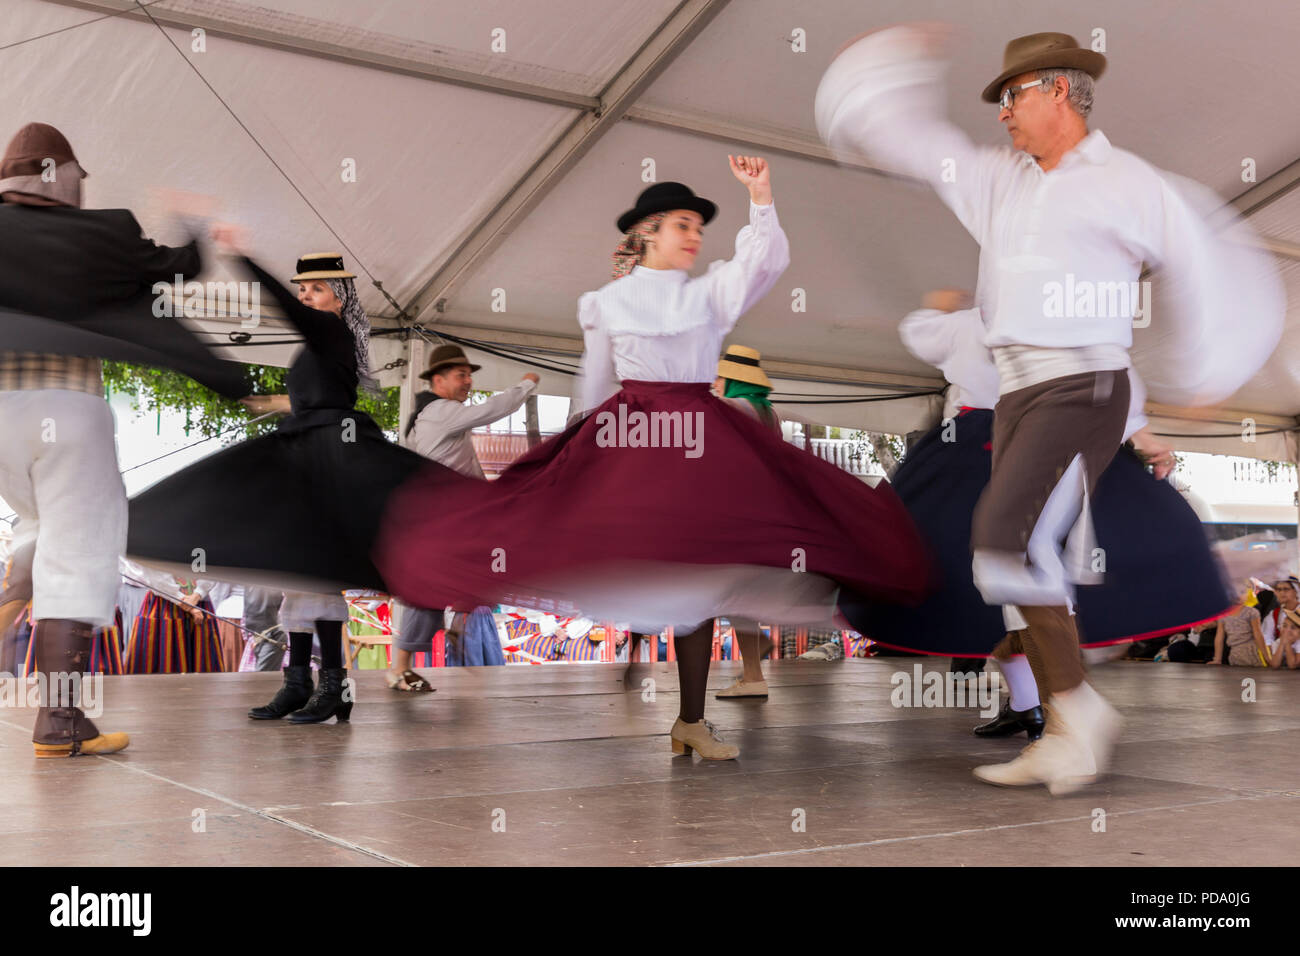 Alcala, Teneriffa, Kanarische Inseln. 30. Mai 2018. Musiker und Tänzer aus lokalen folkloristische Gruppen Durchführung traditioneller Gesang und Tanz in typischer Trad Stockfoto